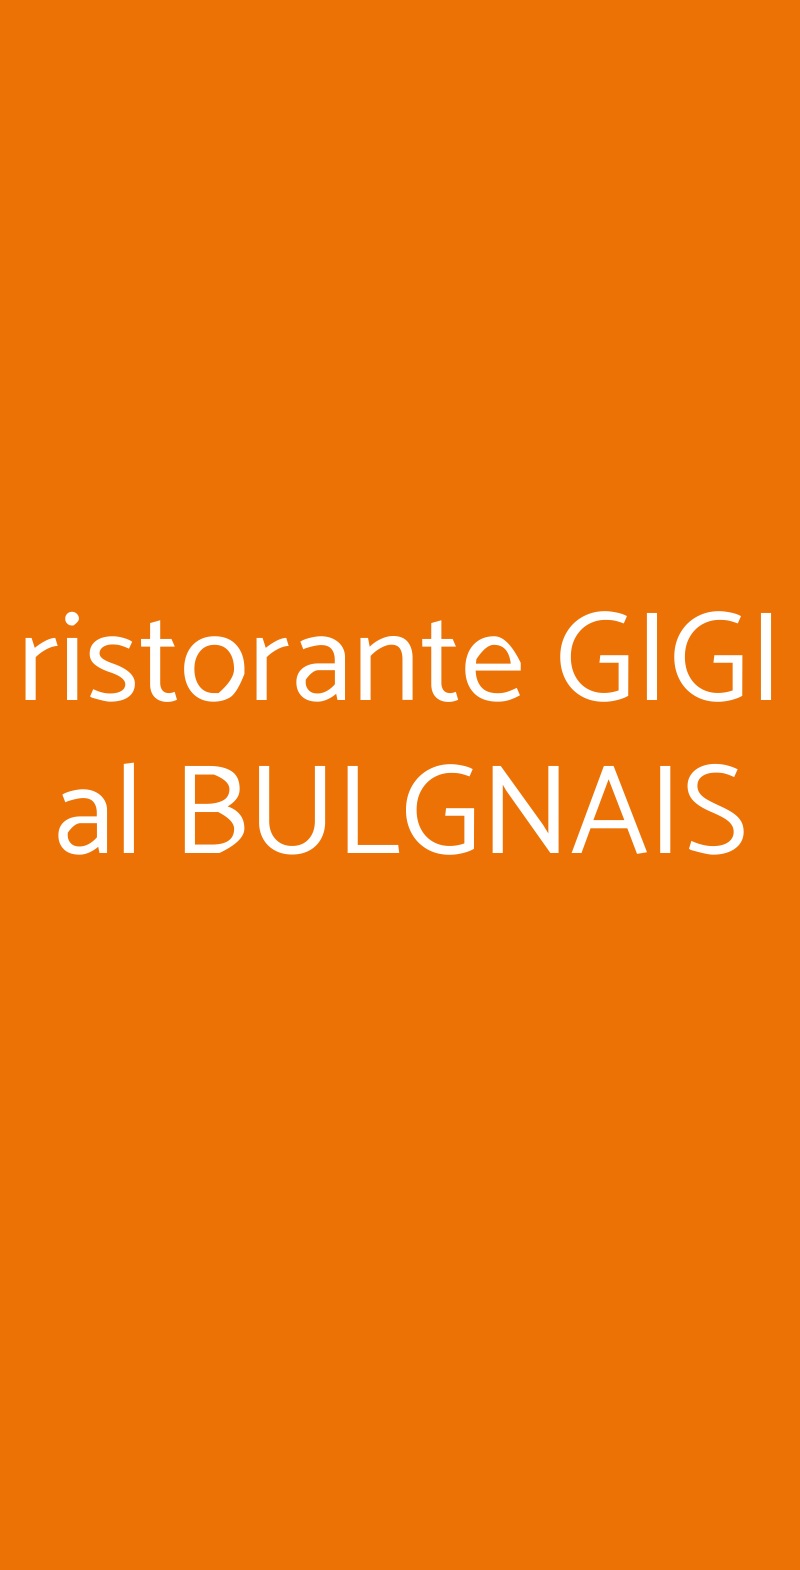 ristorante GIGI al BULGNAIS Bologna menù 1 pagina